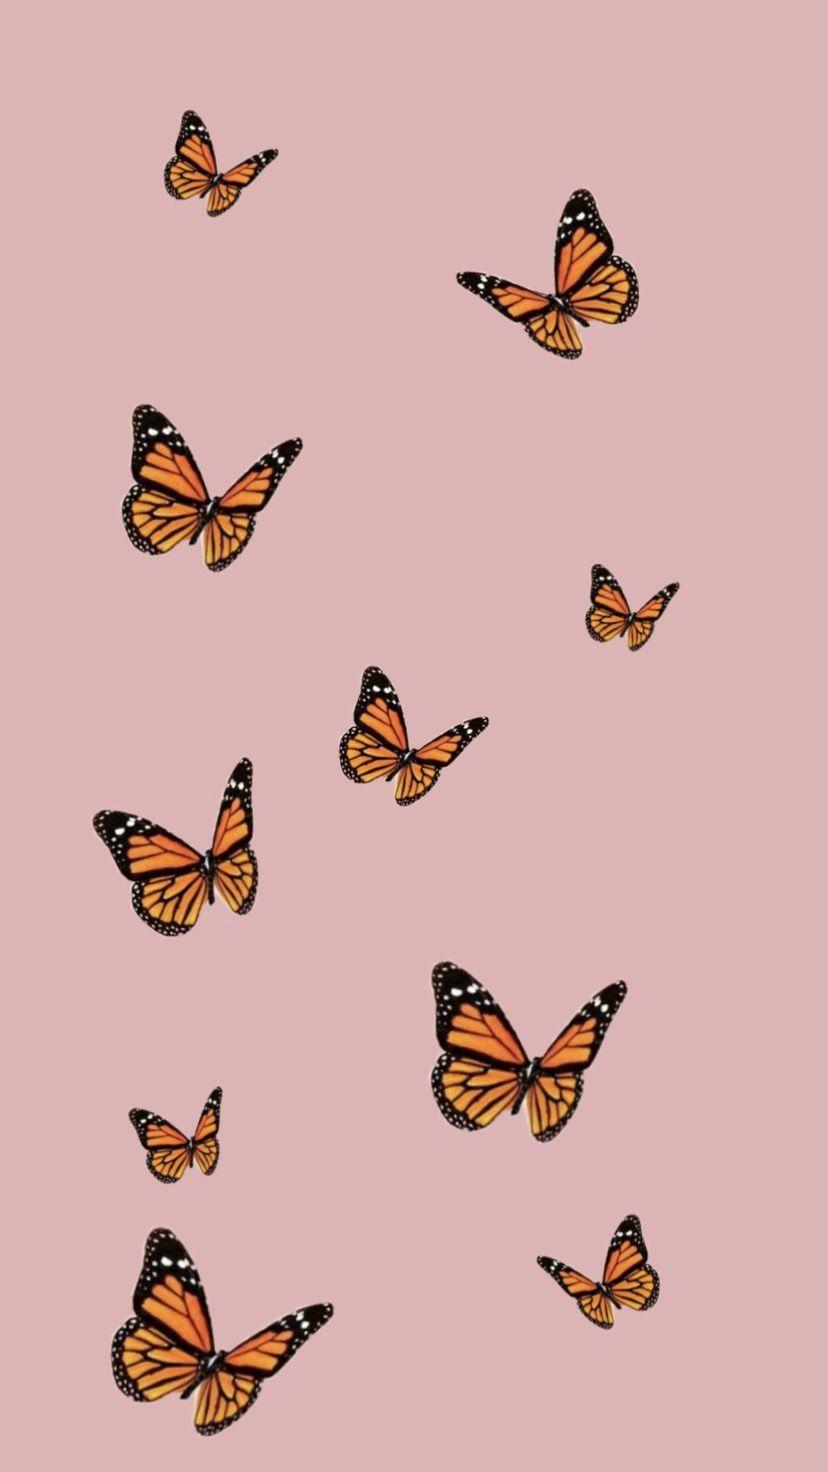 Free download Butterfly HD Wallpapers  PixelsTalkNet